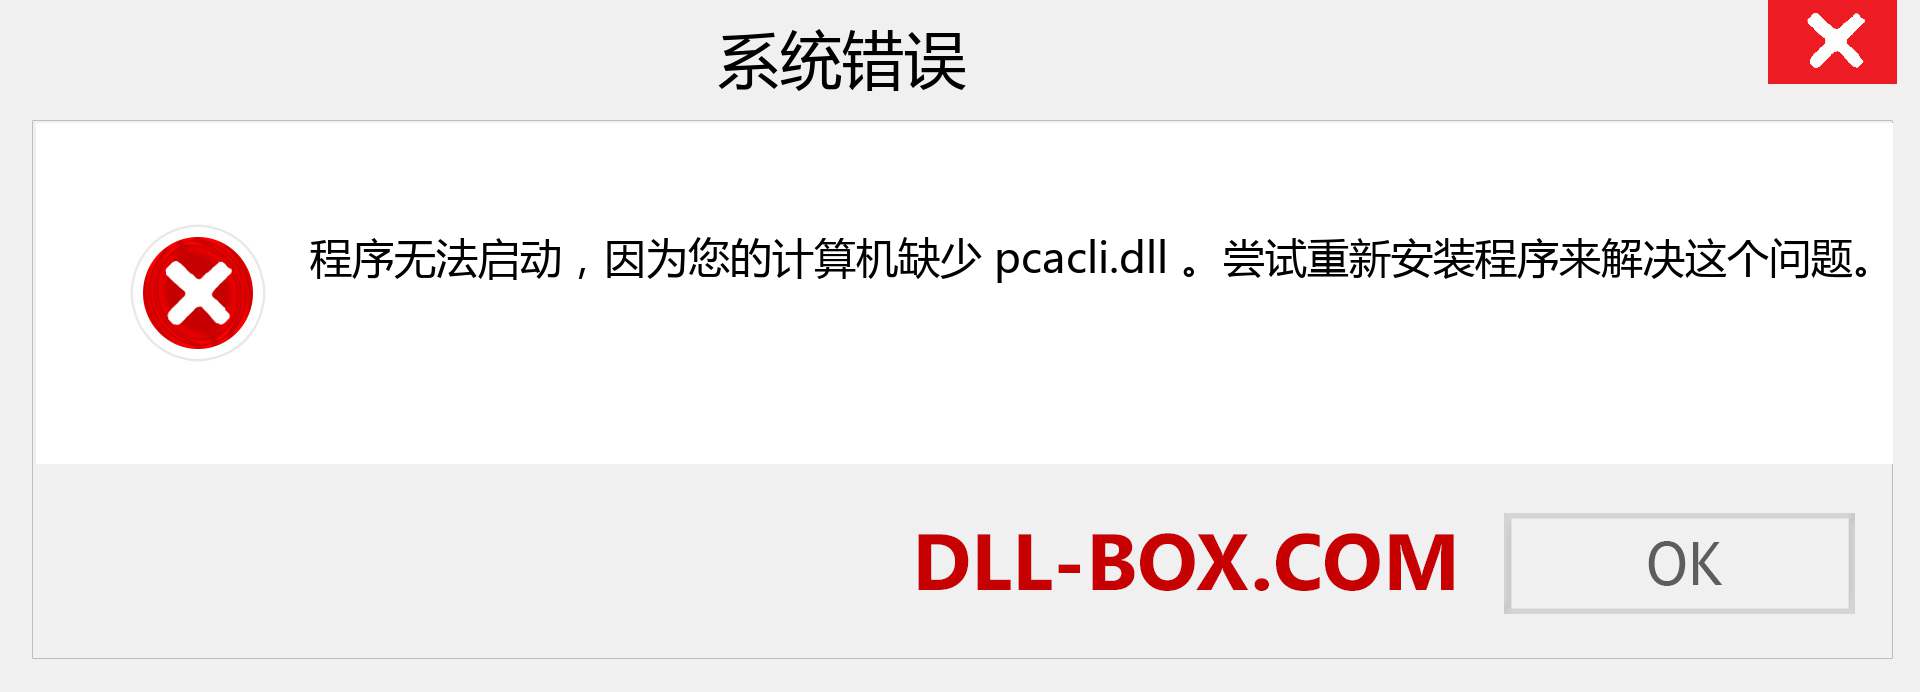 pcacli.dll 文件丢失？。 适用于 Windows 7、8、10 的下载 - 修复 Windows、照片、图像上的 pcacli dll 丢失错误